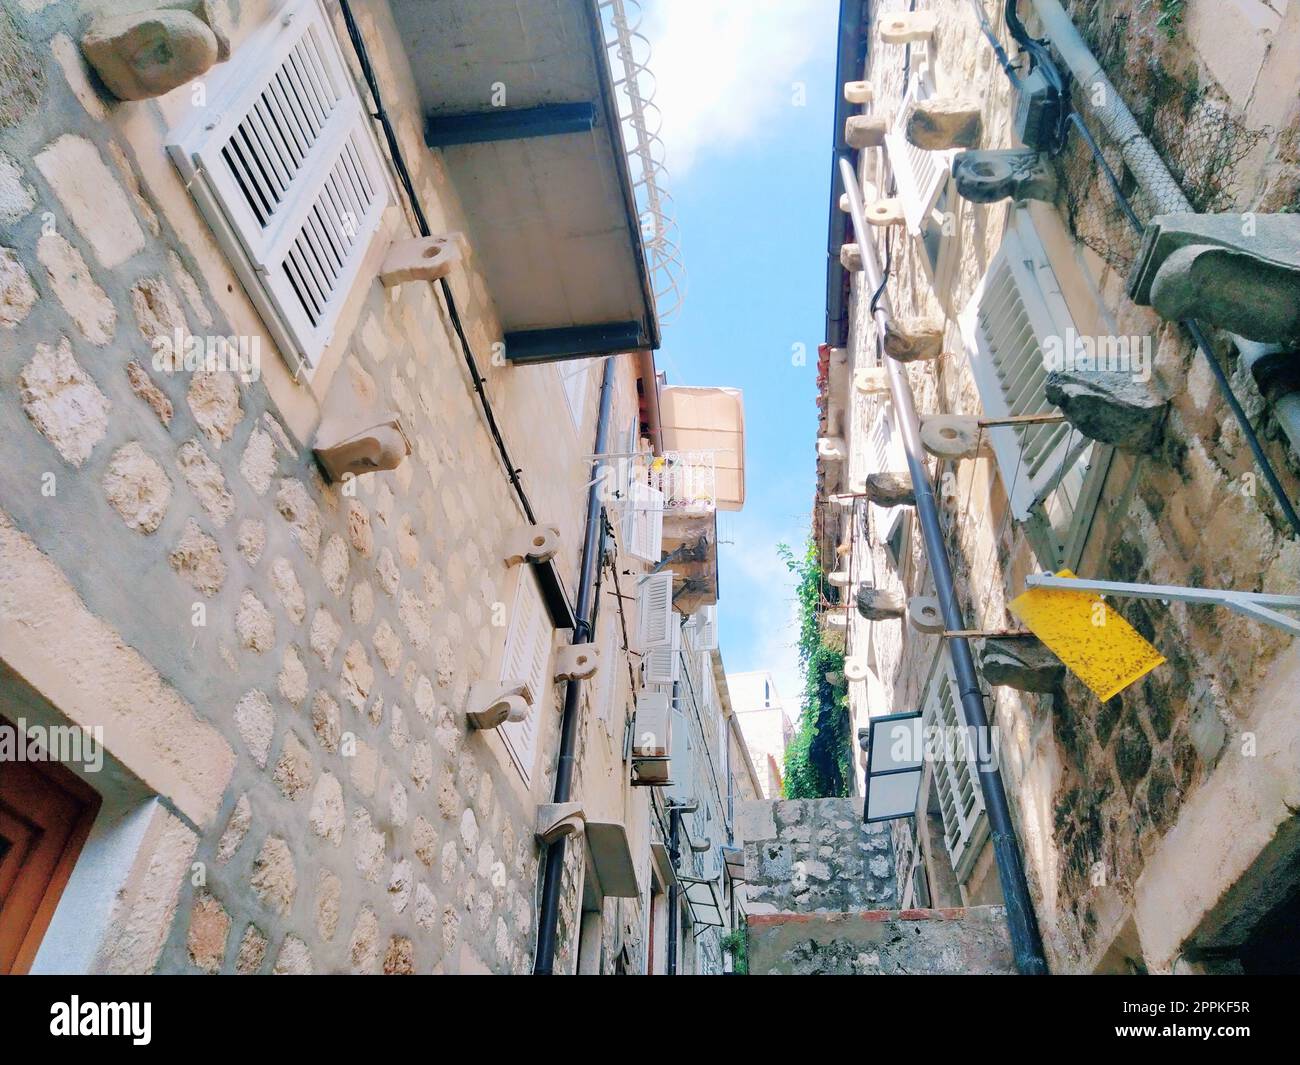 Dubrovnik, Croazia, 08.14. 2022. Stradine strette della città antica. Le facciate delle case sono fatte di marmo e pietra molto vicine l'una all'altra. Finestre con diaframmi. Turismo estivo in Adriatico. Foto Stock